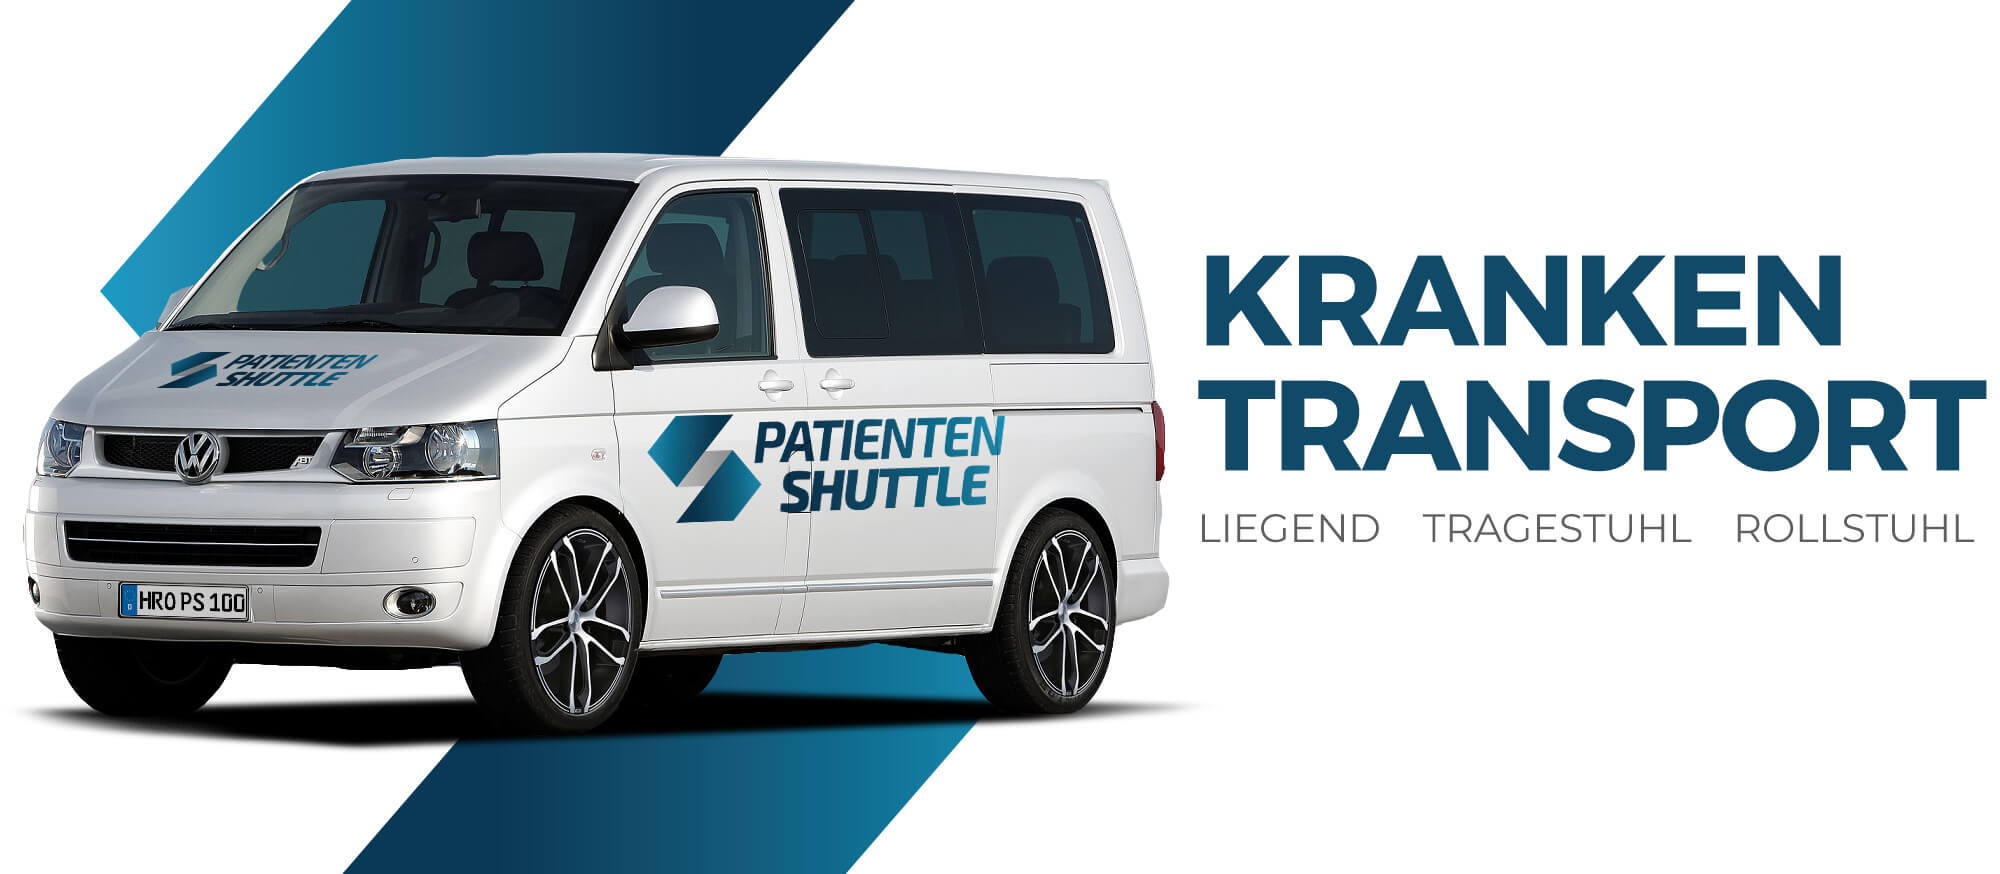 1-Patienten-Shuttle-Krankentransport-1-1